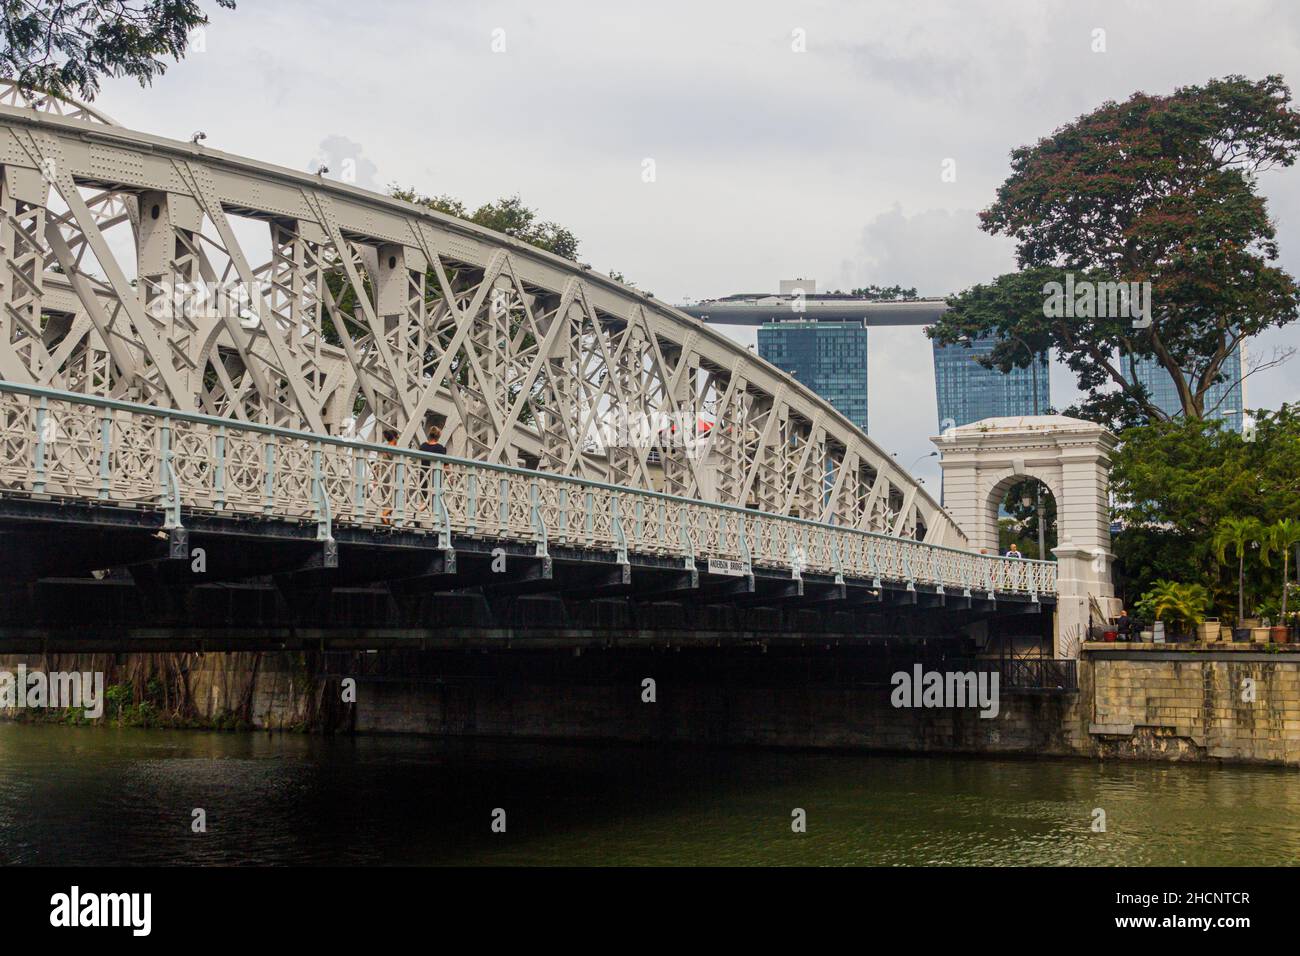 SINGAPUR, SINGAPUR - 11. MÄRZ 2018: Blick auf die Anderson-Brücke in Singapur Stockfoto